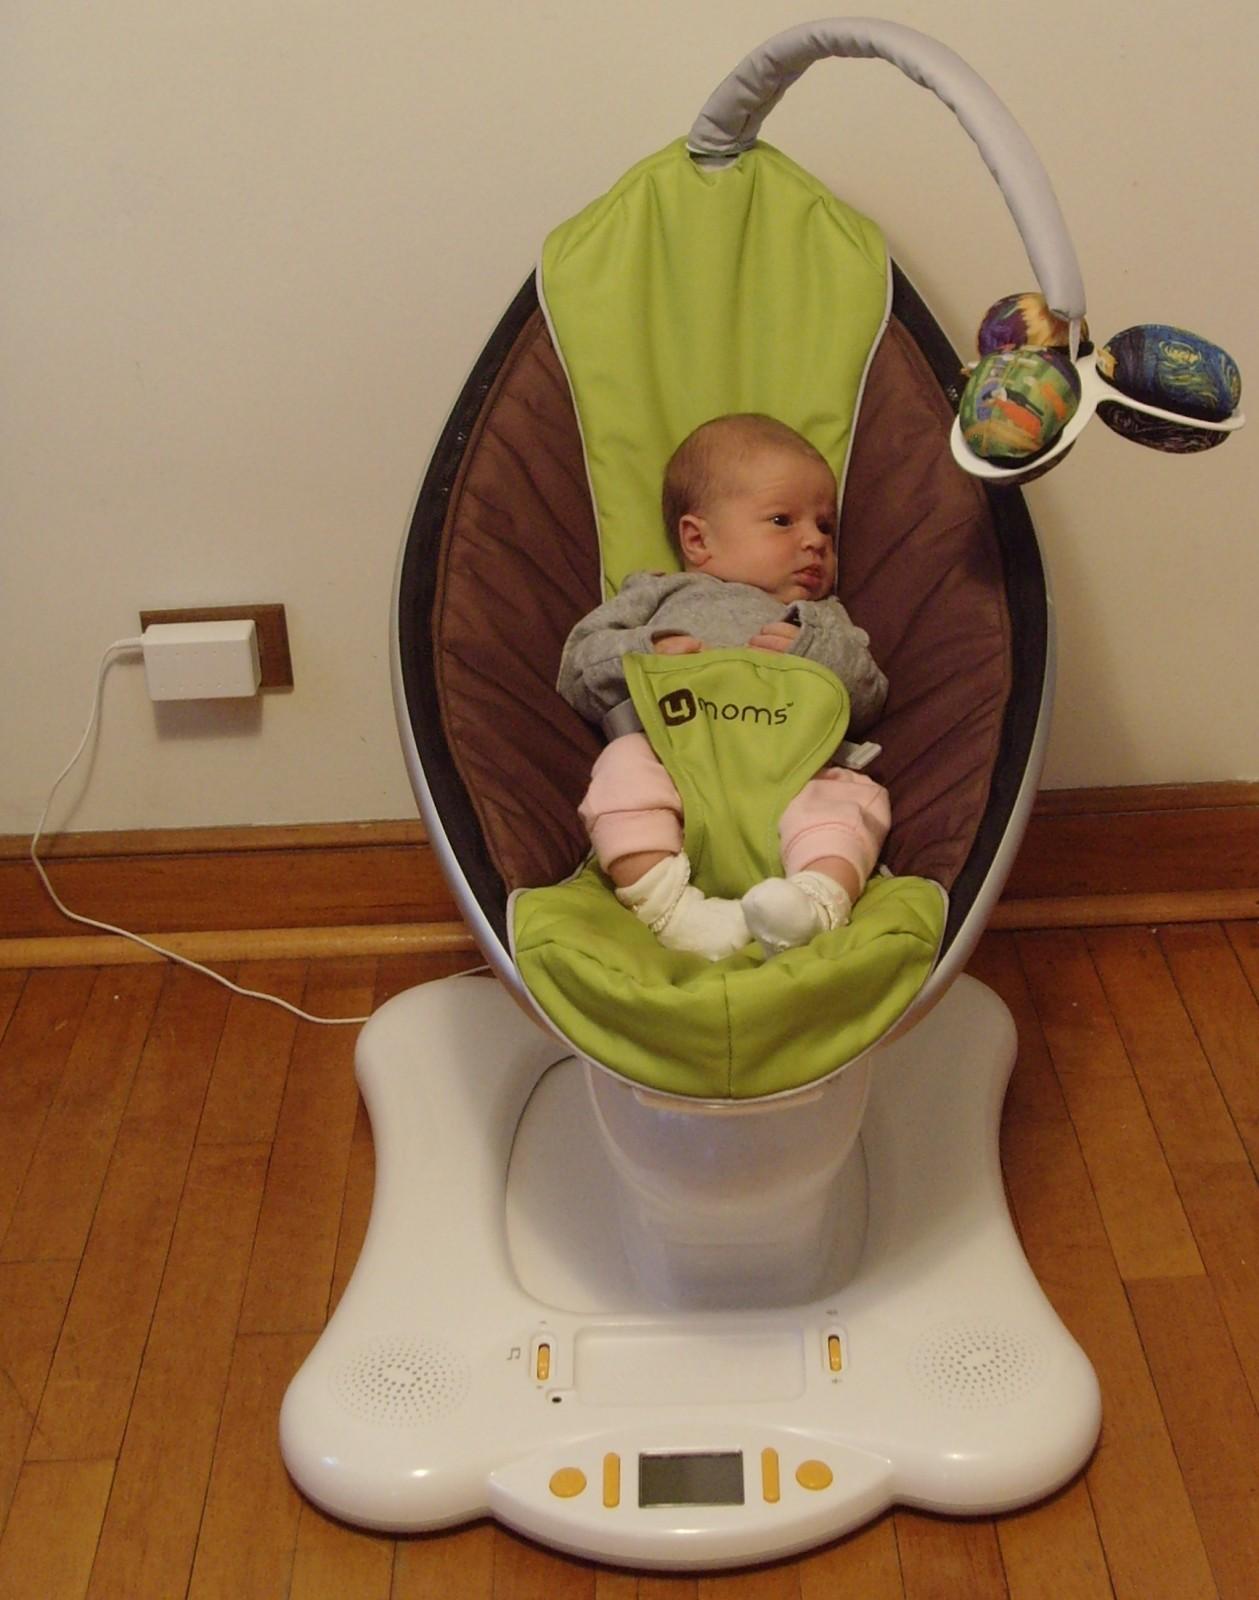 Люлька до скольки месяцев. Электрокачели для новорожденных 4moms. Электронные качели момс 4 зеленые. Кресло для укачивания новорожденных. Люлька для новорожденных качалка.